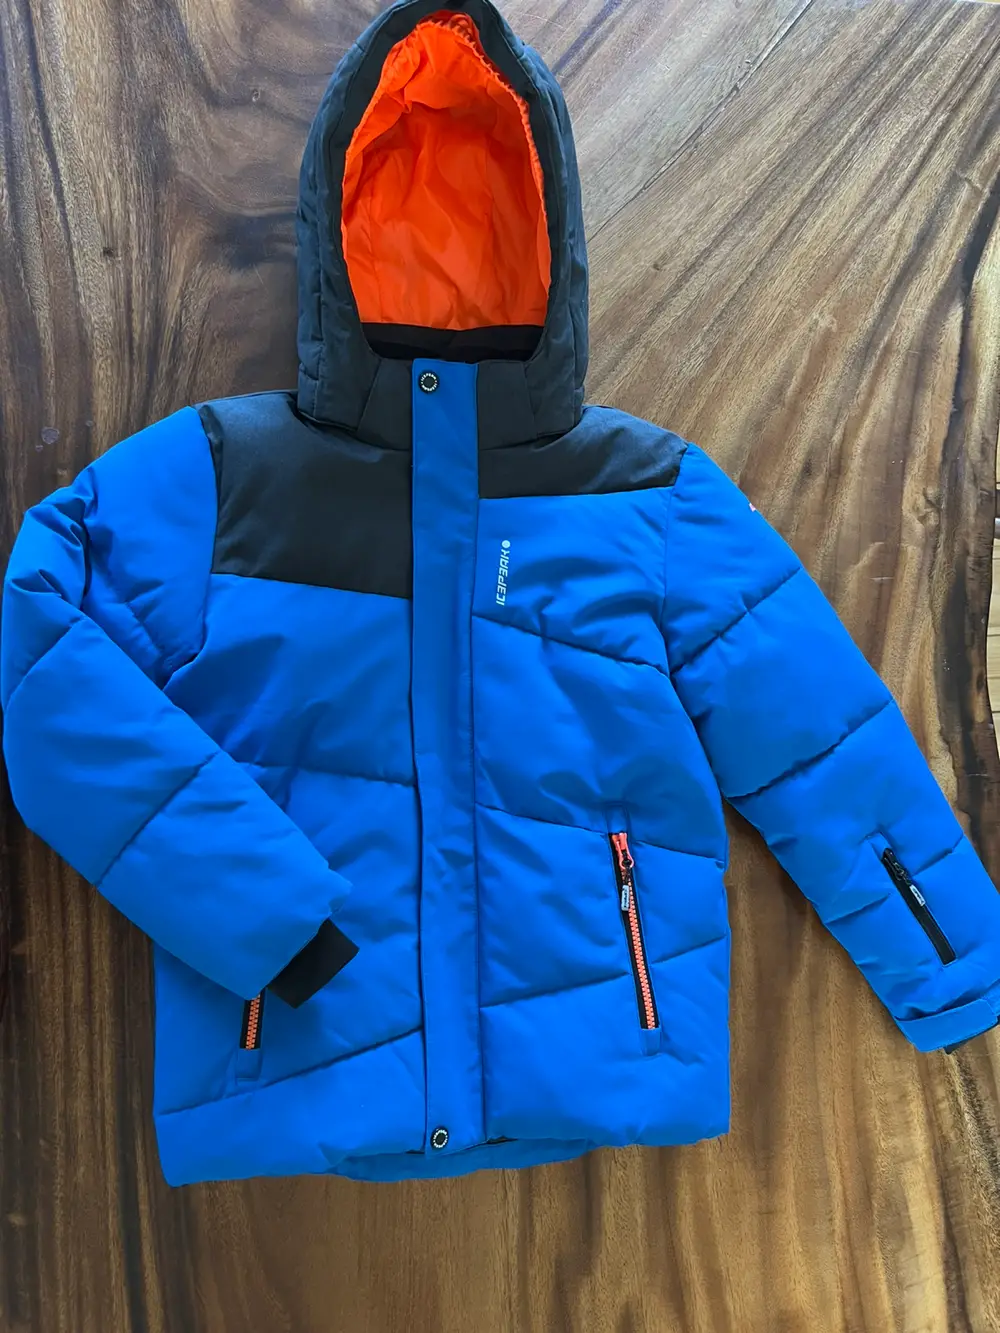 Køb ICEPEAK Vinterjakke i størrelse 140 af Tania på Reshopper · Shop til børn, mor og bolig